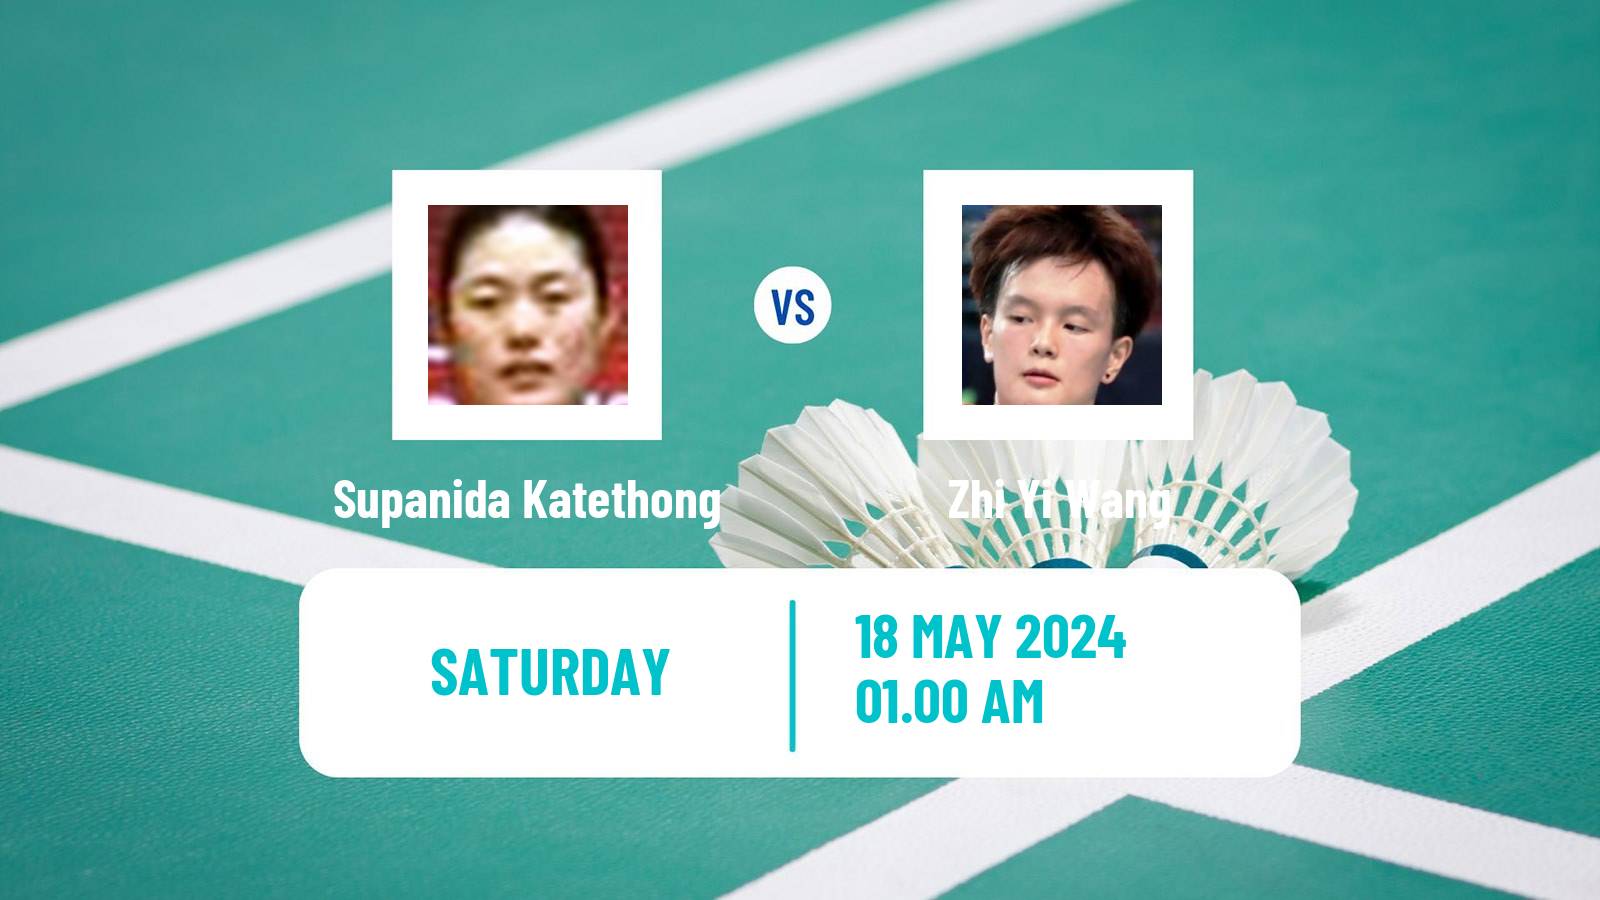 Badminton BWF World Tour Thailand Open Women Supanida Katethong - Zhi Yi Wang